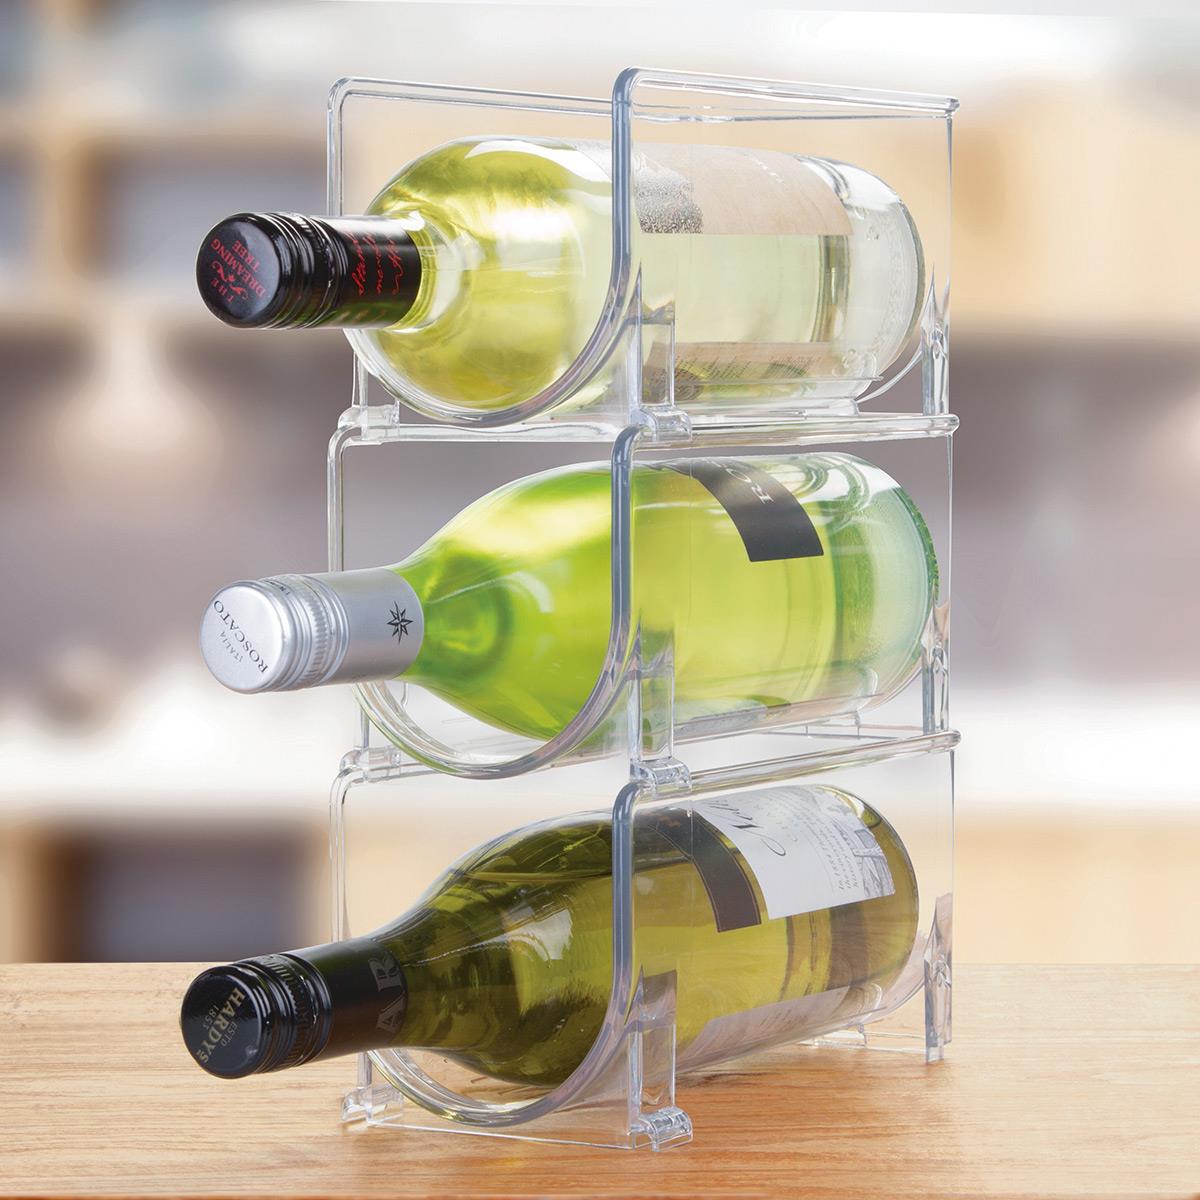 mosaik Klage Afrika Interdesign holder til opbevaring af vin i køleskabet